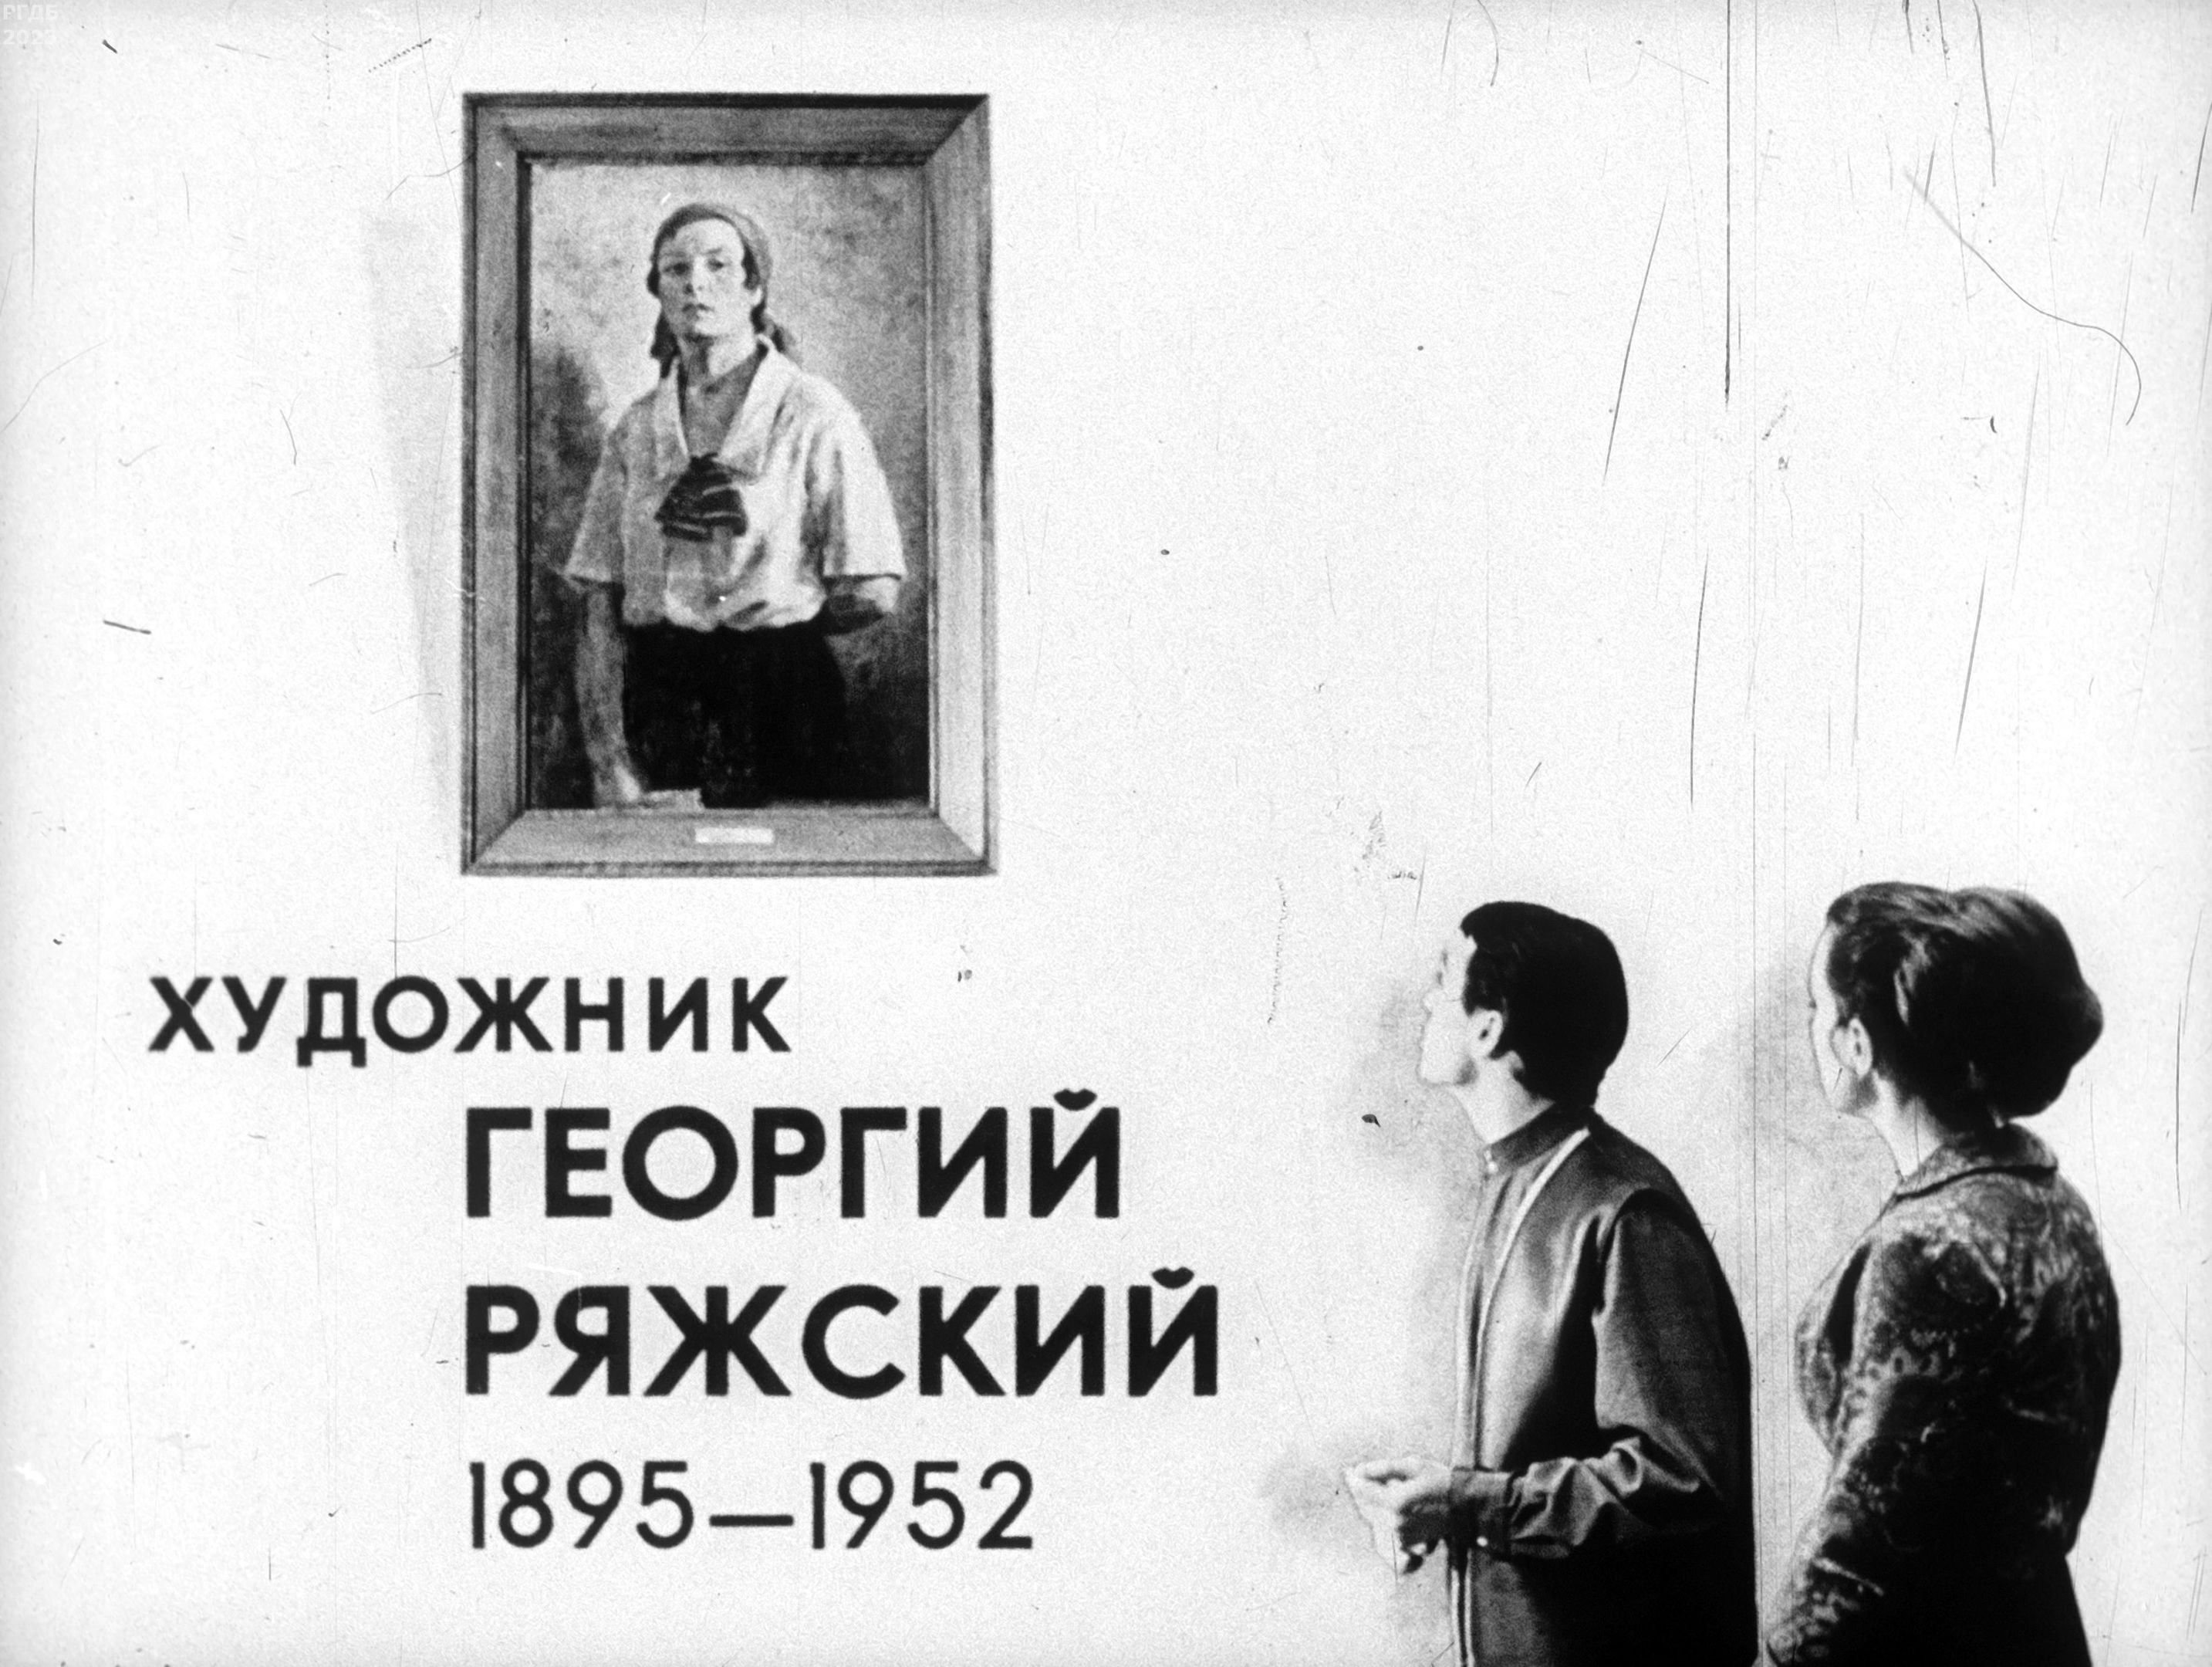 Художник Георгий Ряжский. 1895-1952